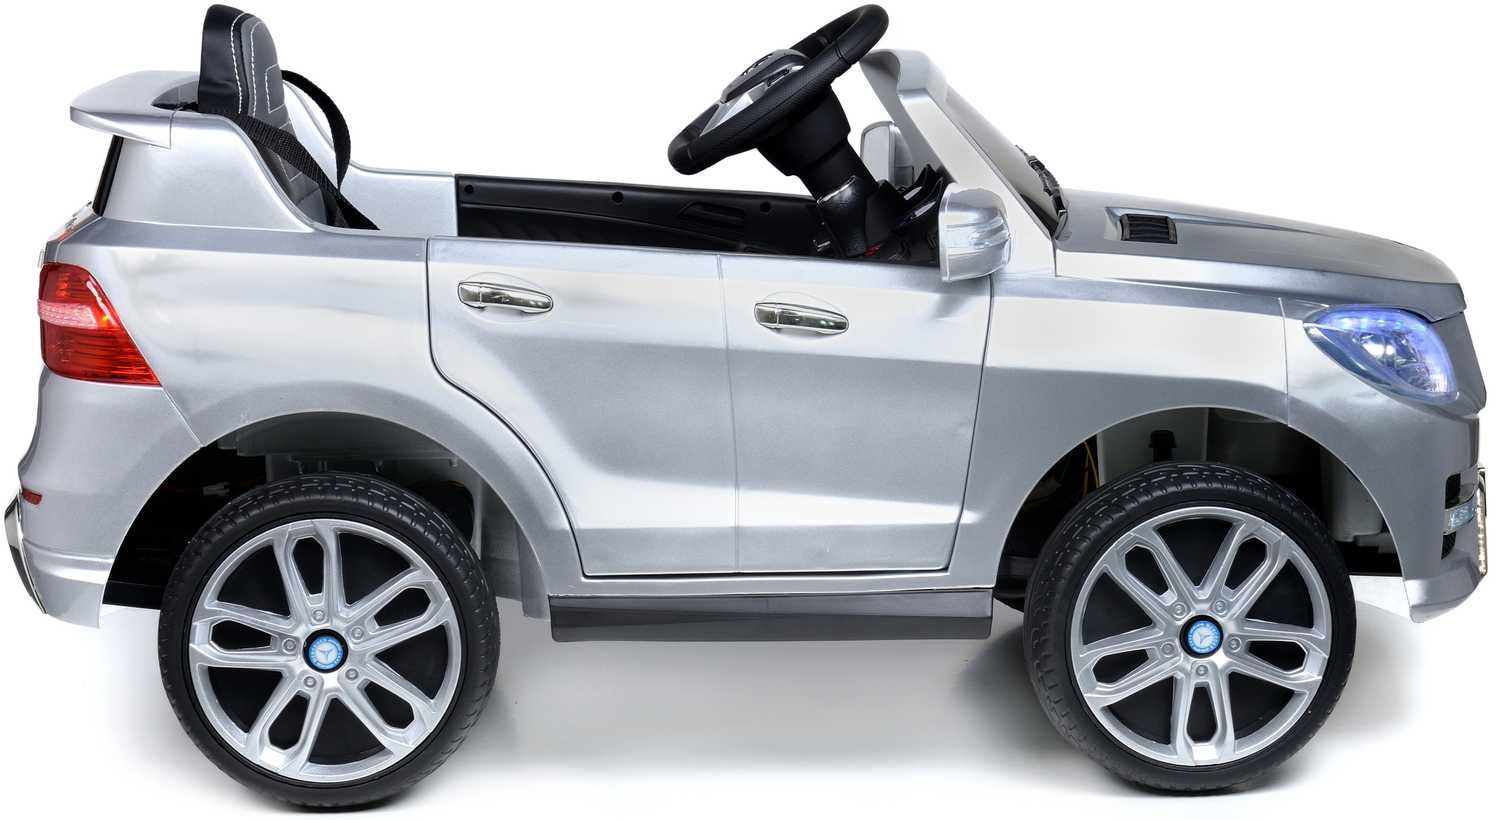 Pojazd akumulatorowy dla dzieci Mercedes-Benz ML350 - Srebrny